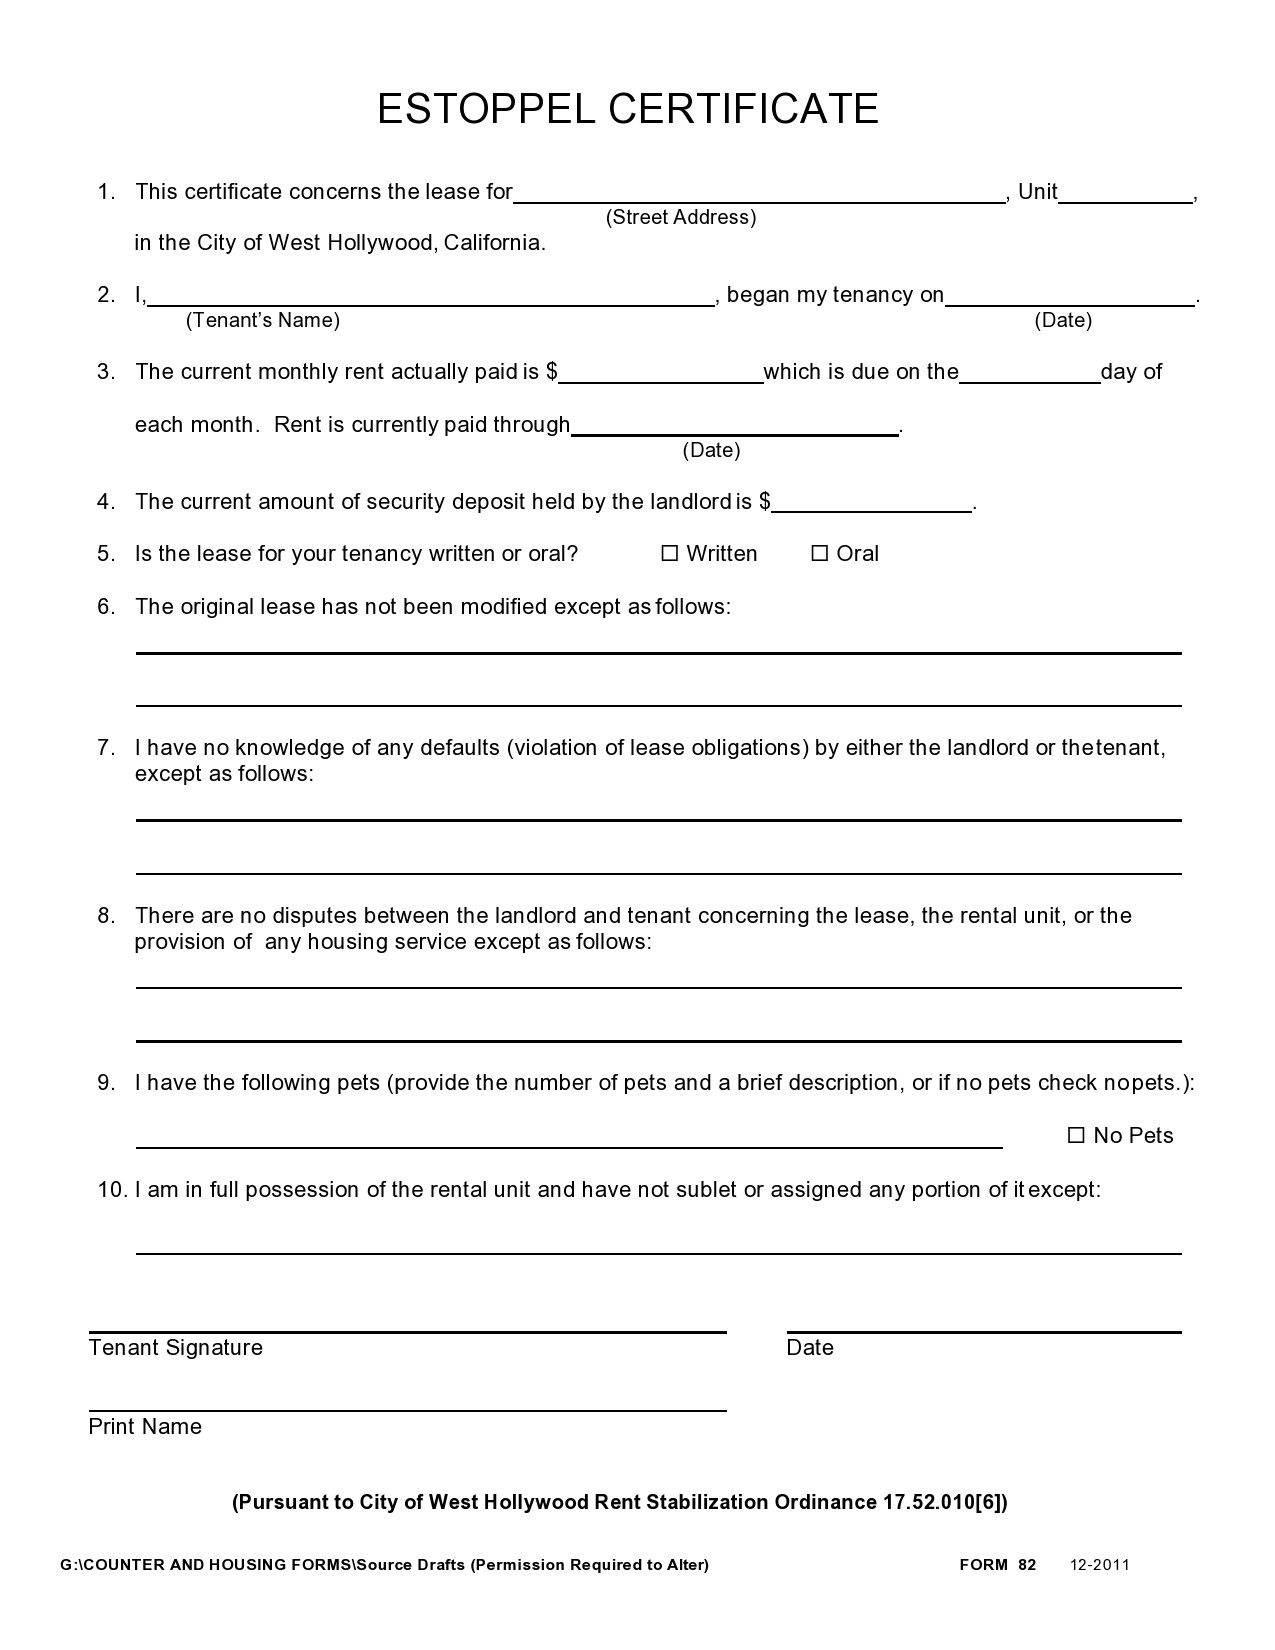 Free estoppel certificate form 15